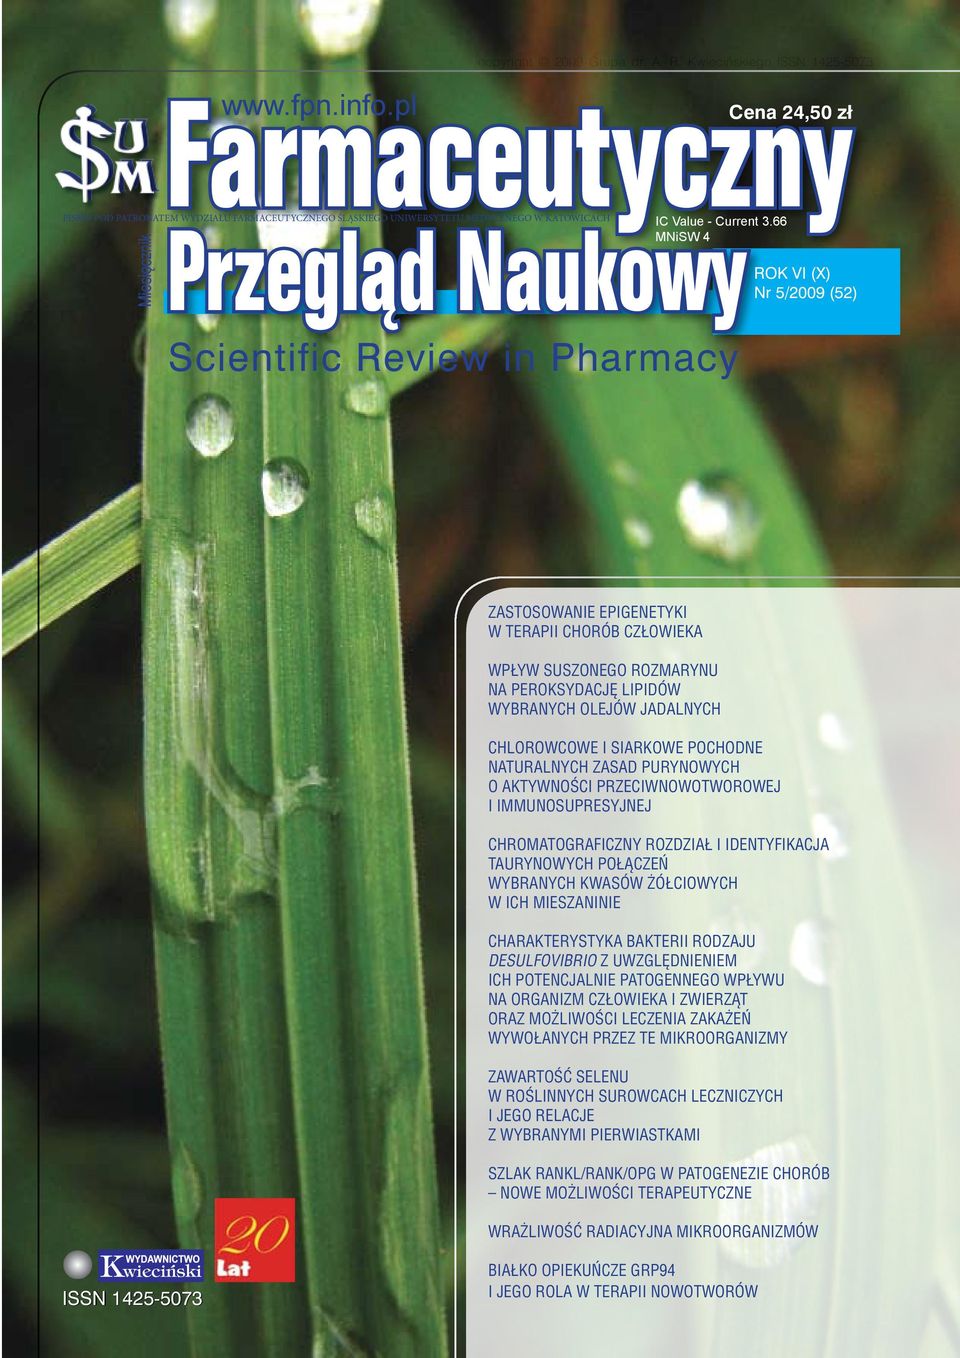 66 MNiSW 4 ROK VI (X) Nr 5/2009 (52) Miesięcznik Scientific Review in Pharmacy Zastosowanie epigenetyki w terapii chorób człowieka Wpływ suszonego rozmarynu na peroksydację lipidów wybranych olejów